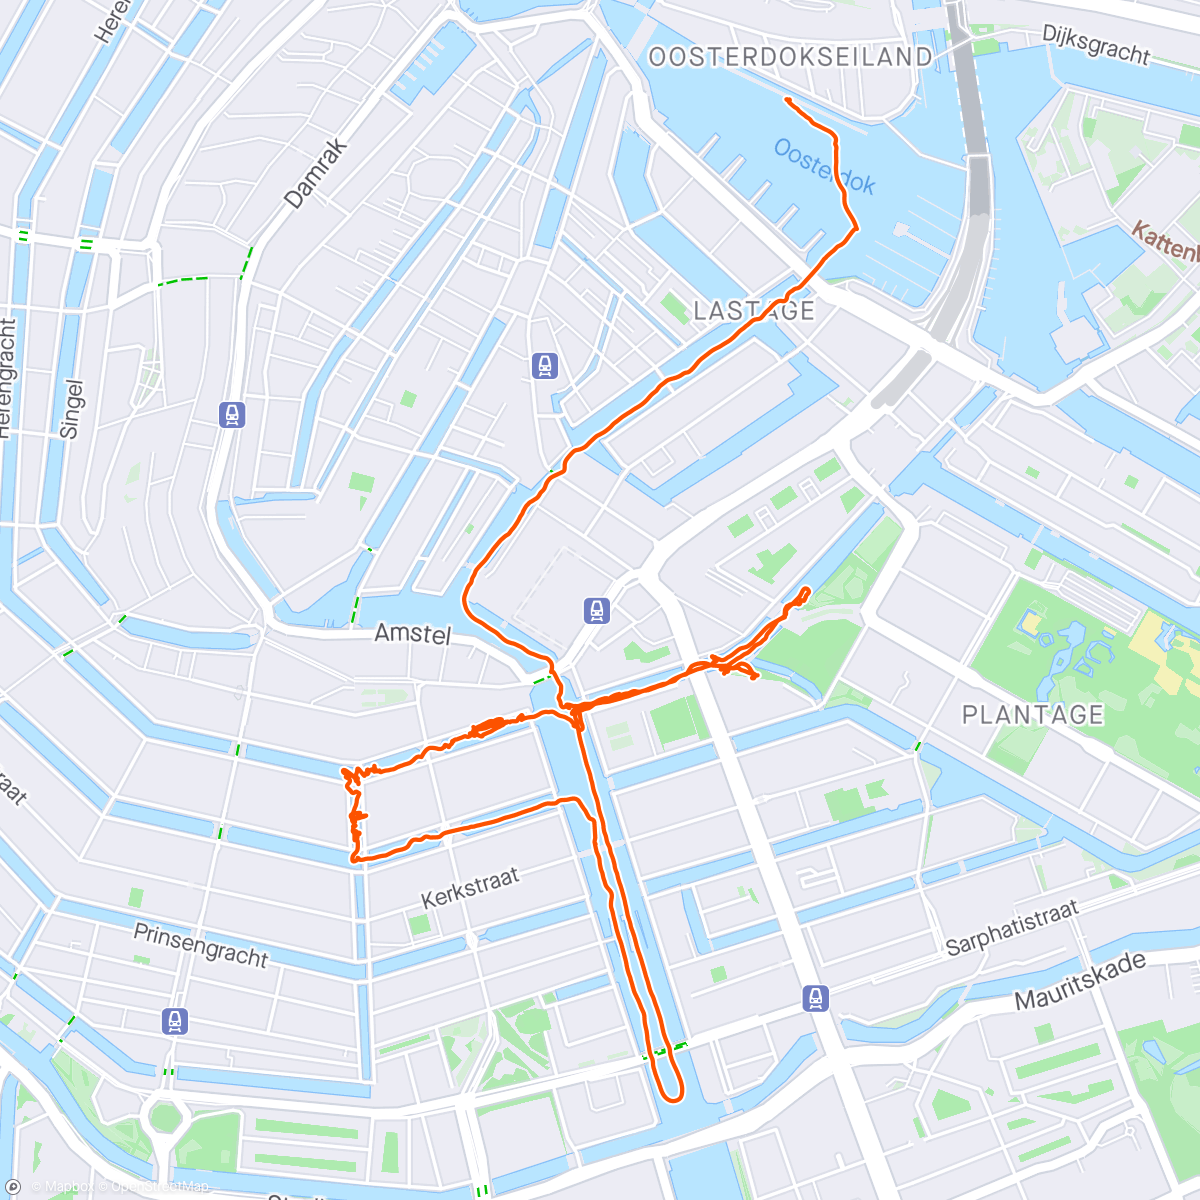 「Koningsdag」活動的地圖